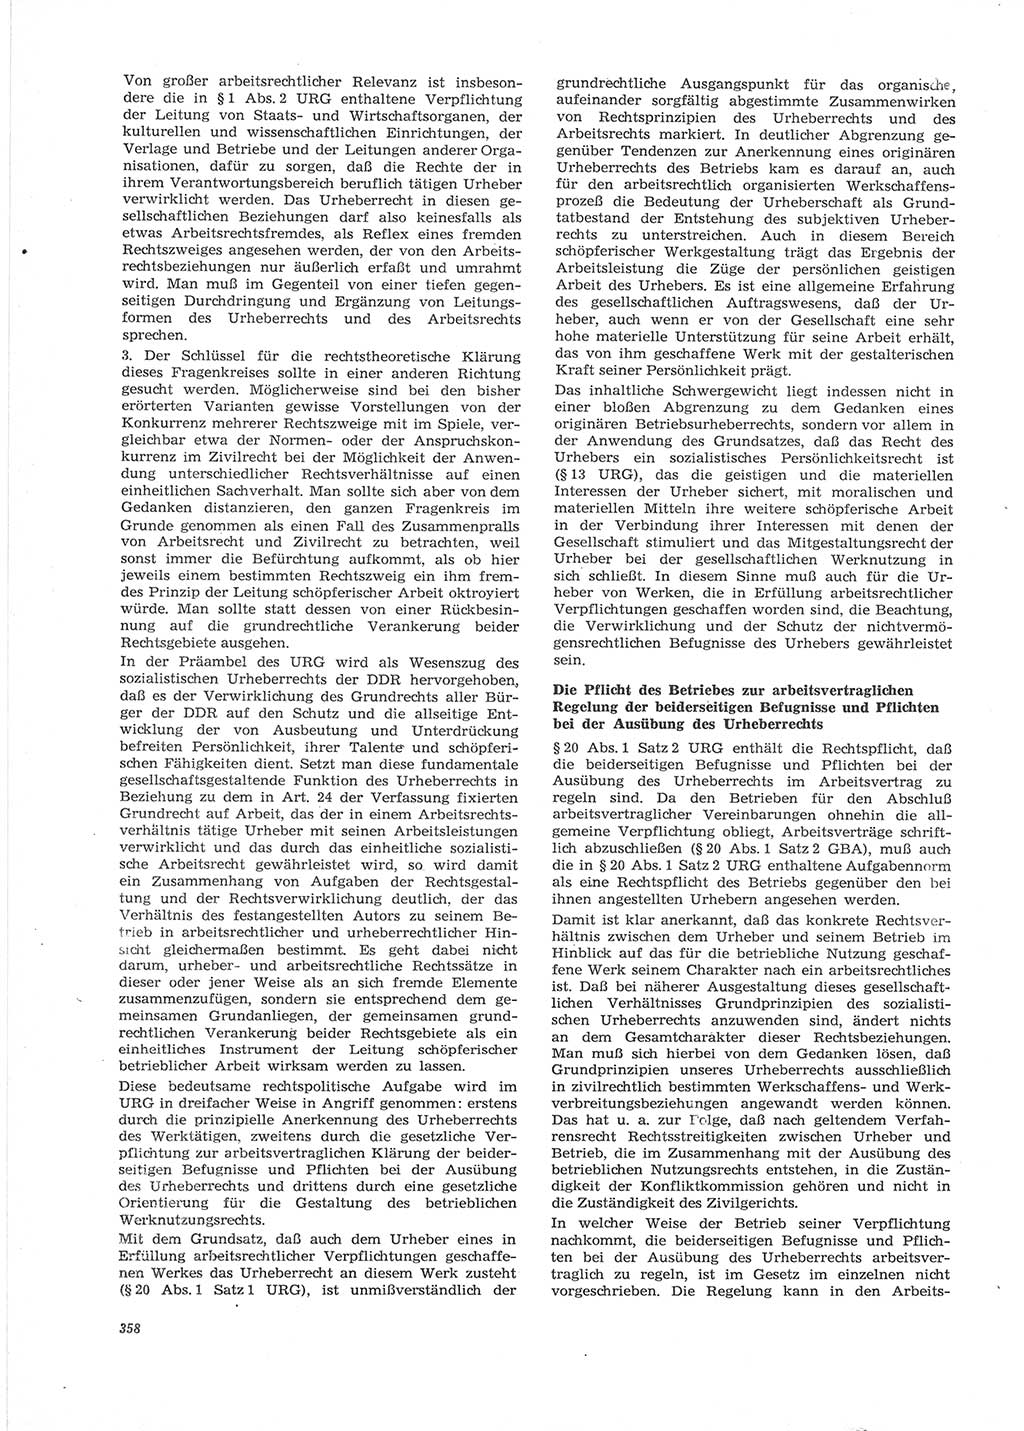 Neue Justiz (NJ), Zeitschrift für Recht und Rechtswissenschaft [Deutsche Demokratische Republik (DDR)], 28. Jahrgang 1974, Seite 358 (NJ DDR 1974, S. 358)